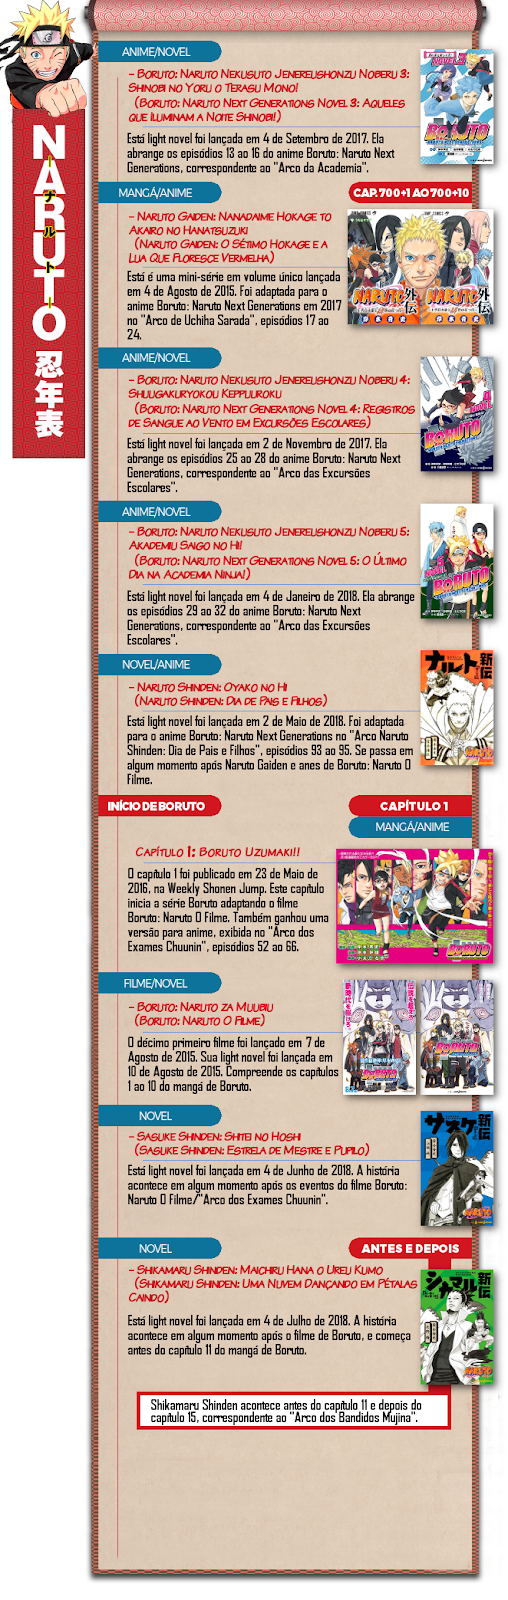 Naruto News: Cronologia de Publicações de Naruto e Boruto